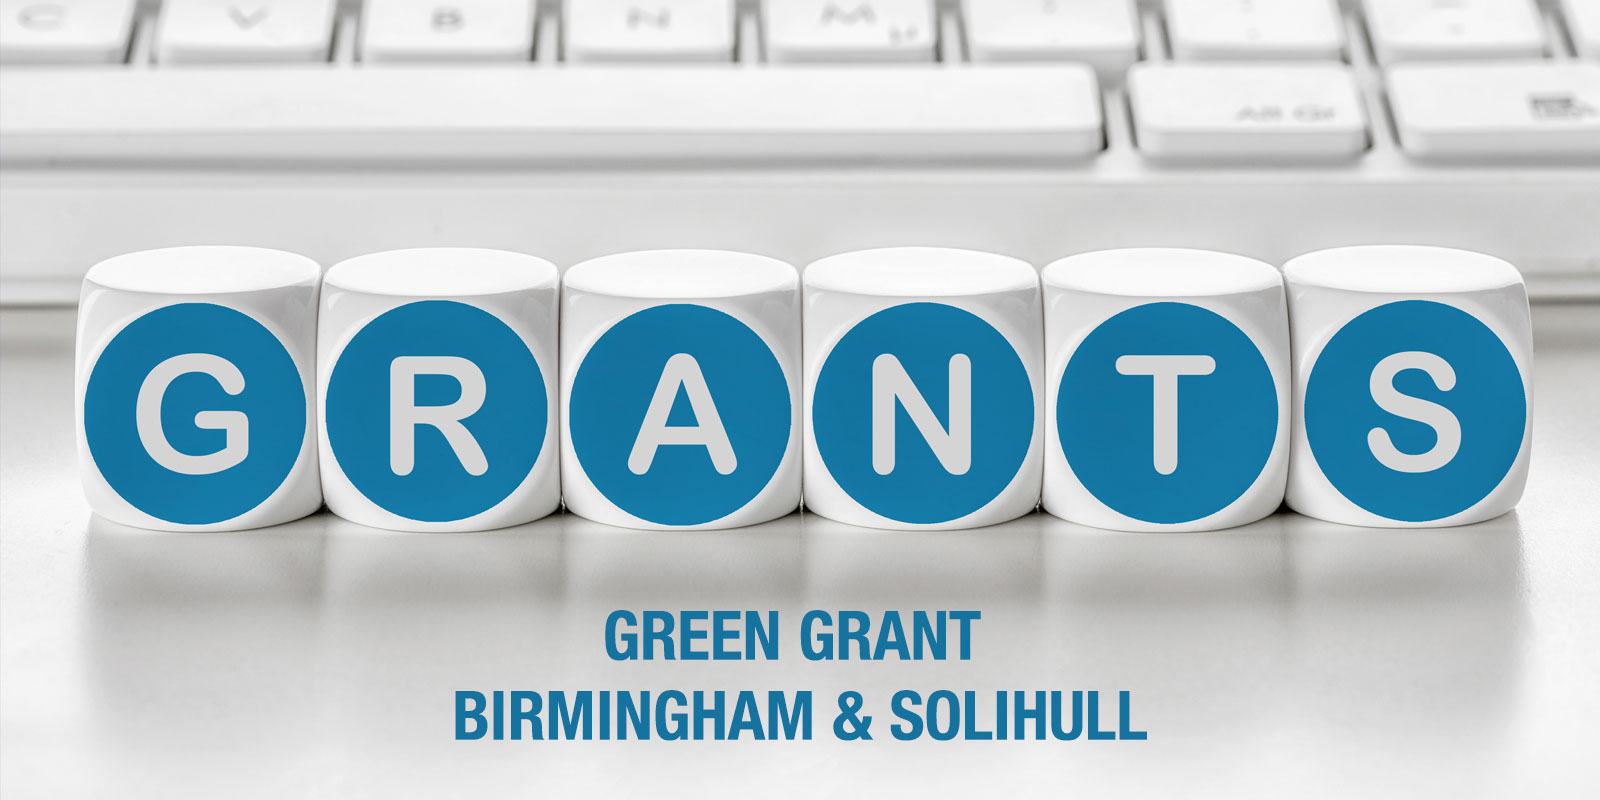 Green Grant - Birmingham & Solihull